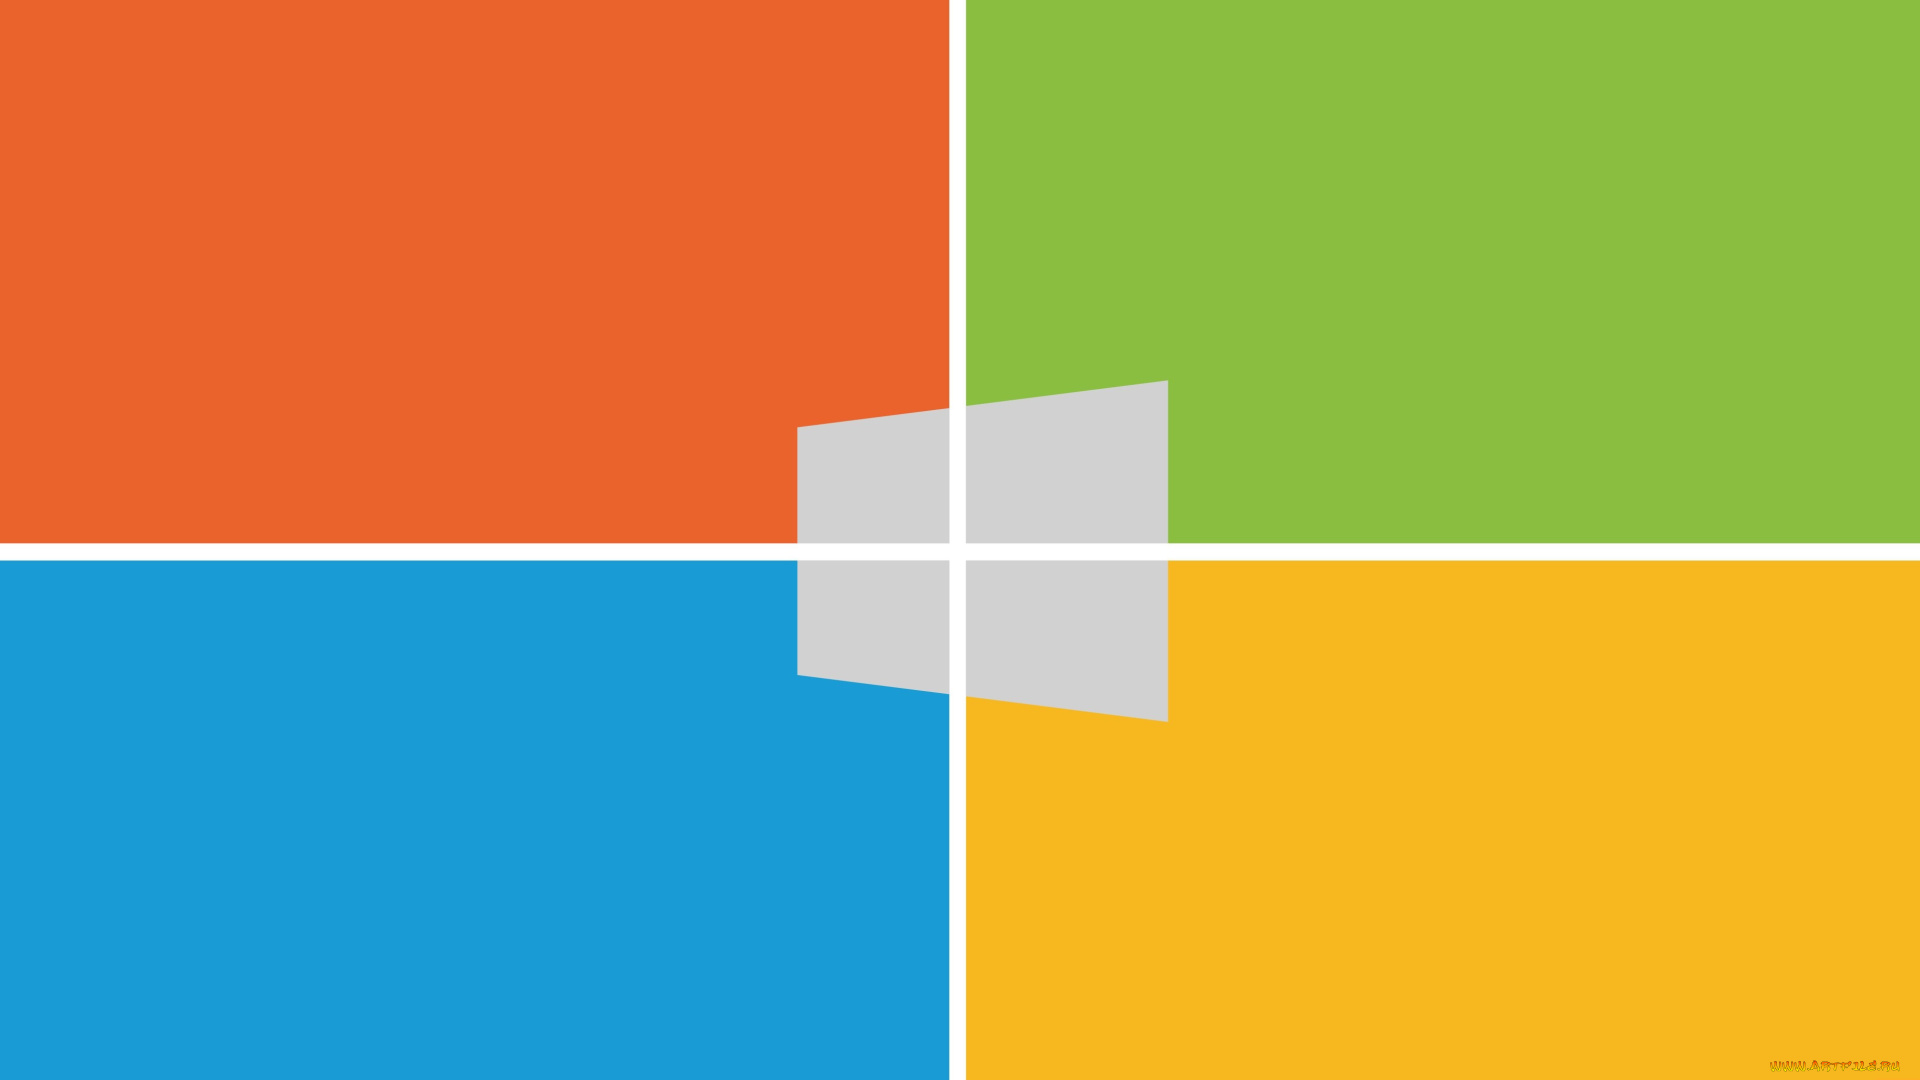 компьютеры, windows, 9, фон, логотип